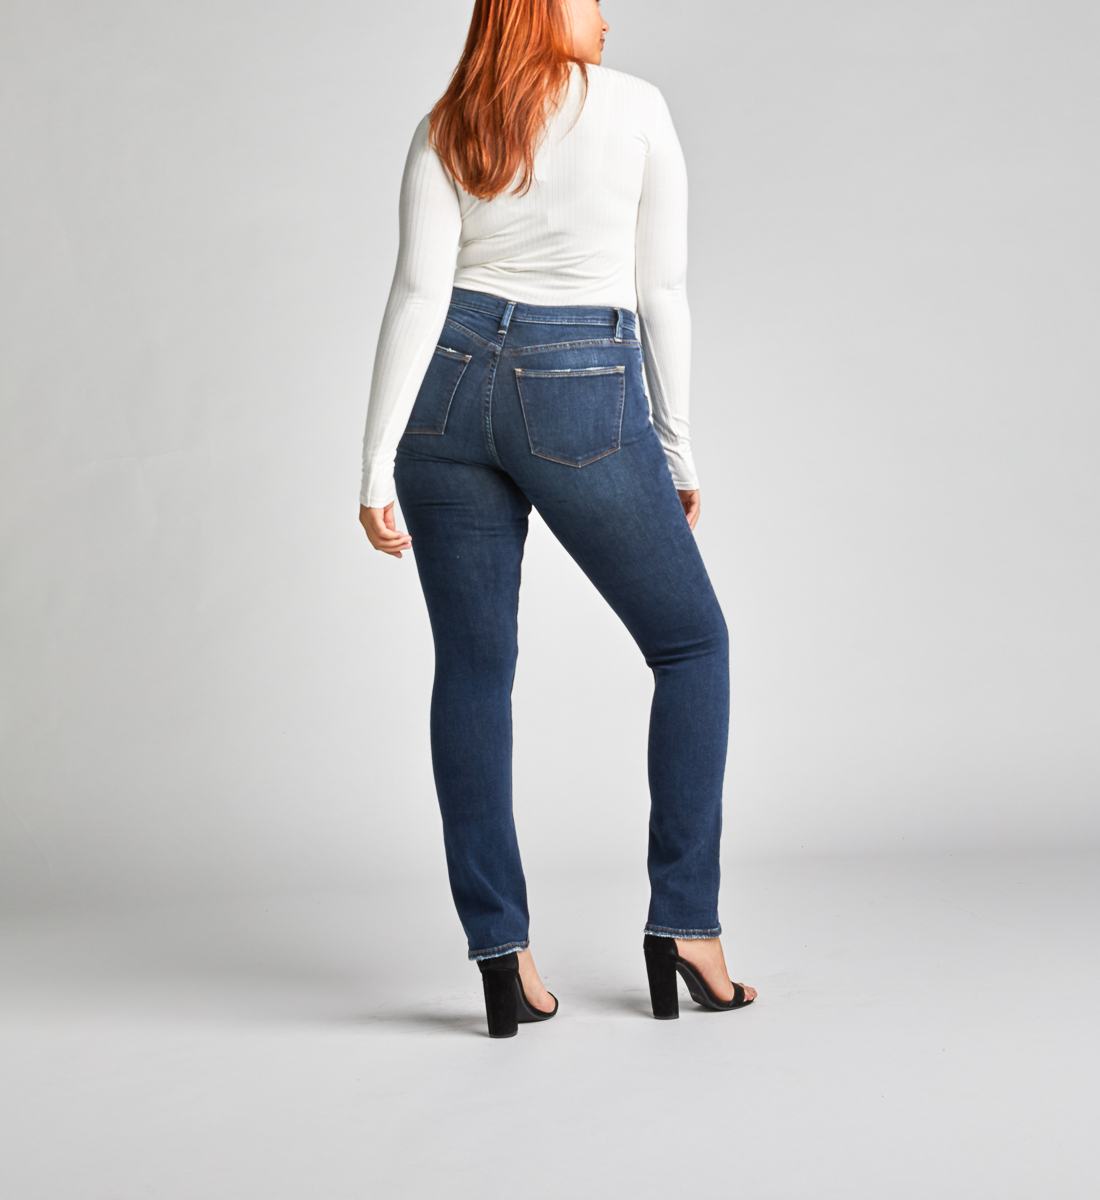 sonoma jeans plus size